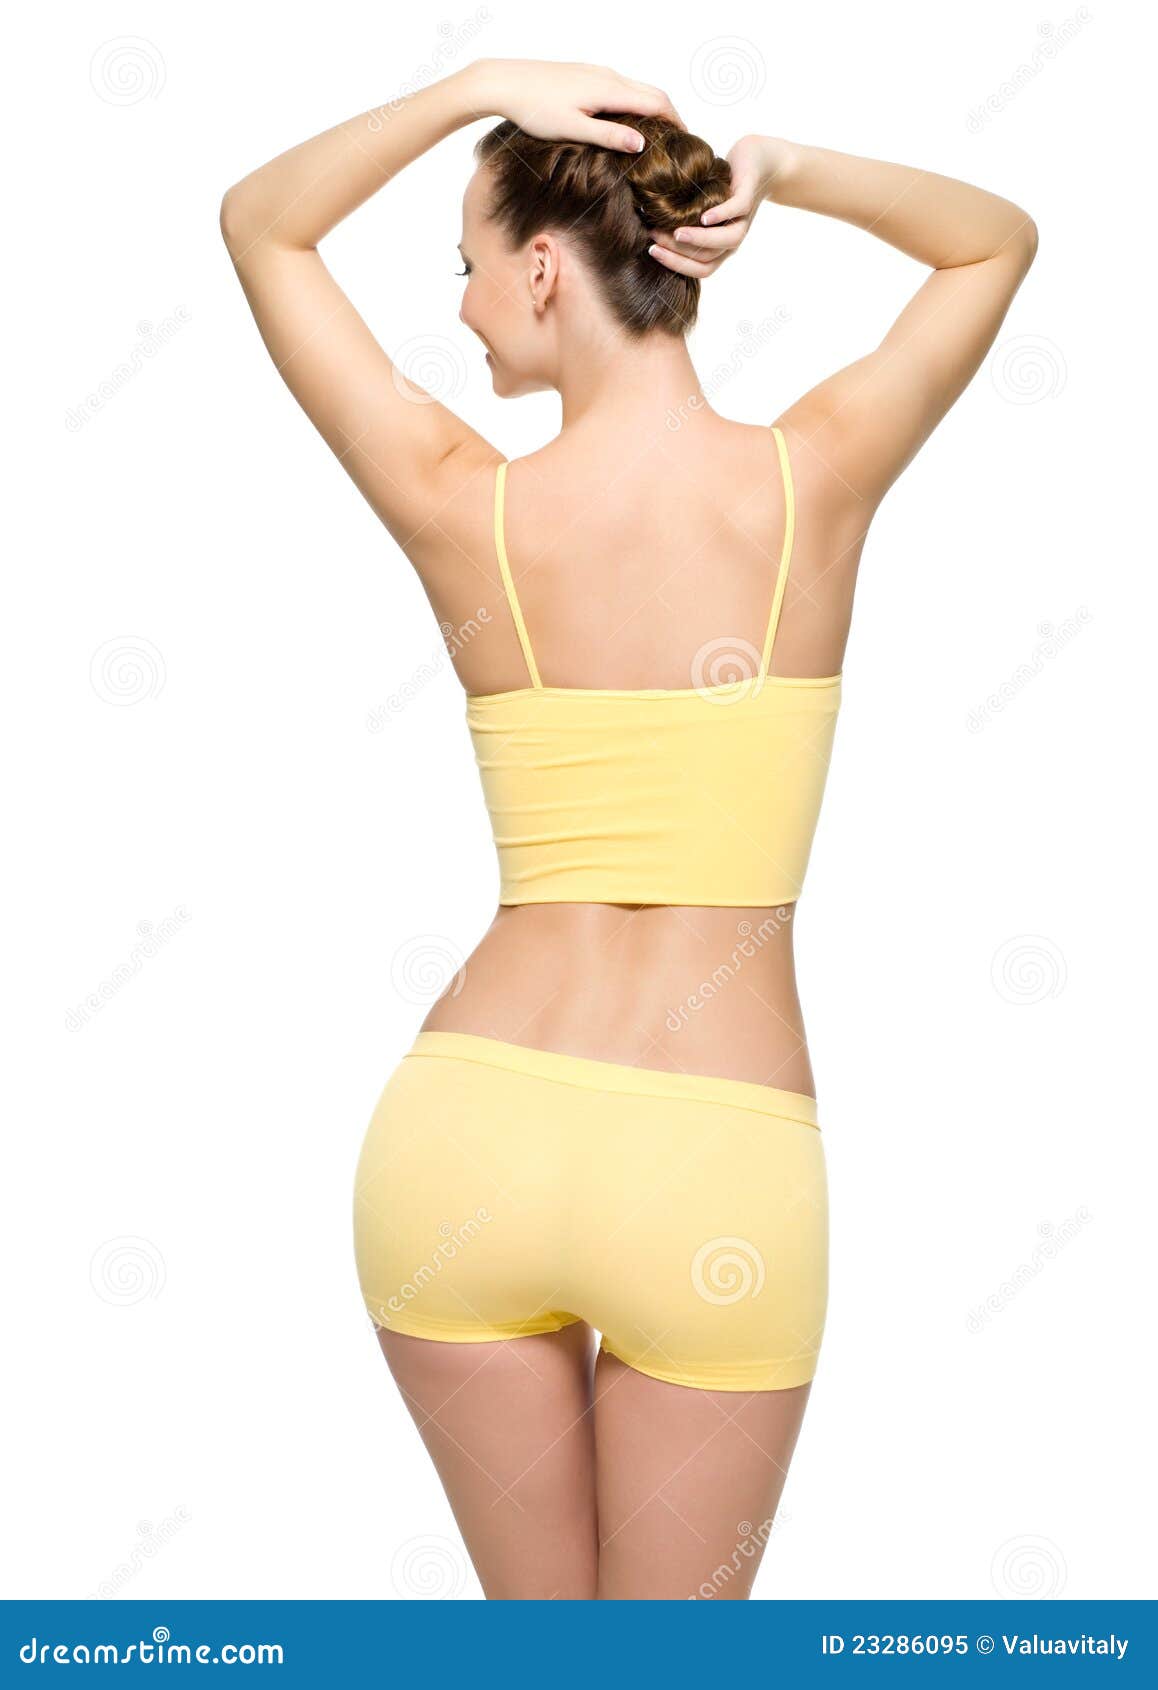 Size 40 woman stock image. Image of lifestyle, bottom - 27516987